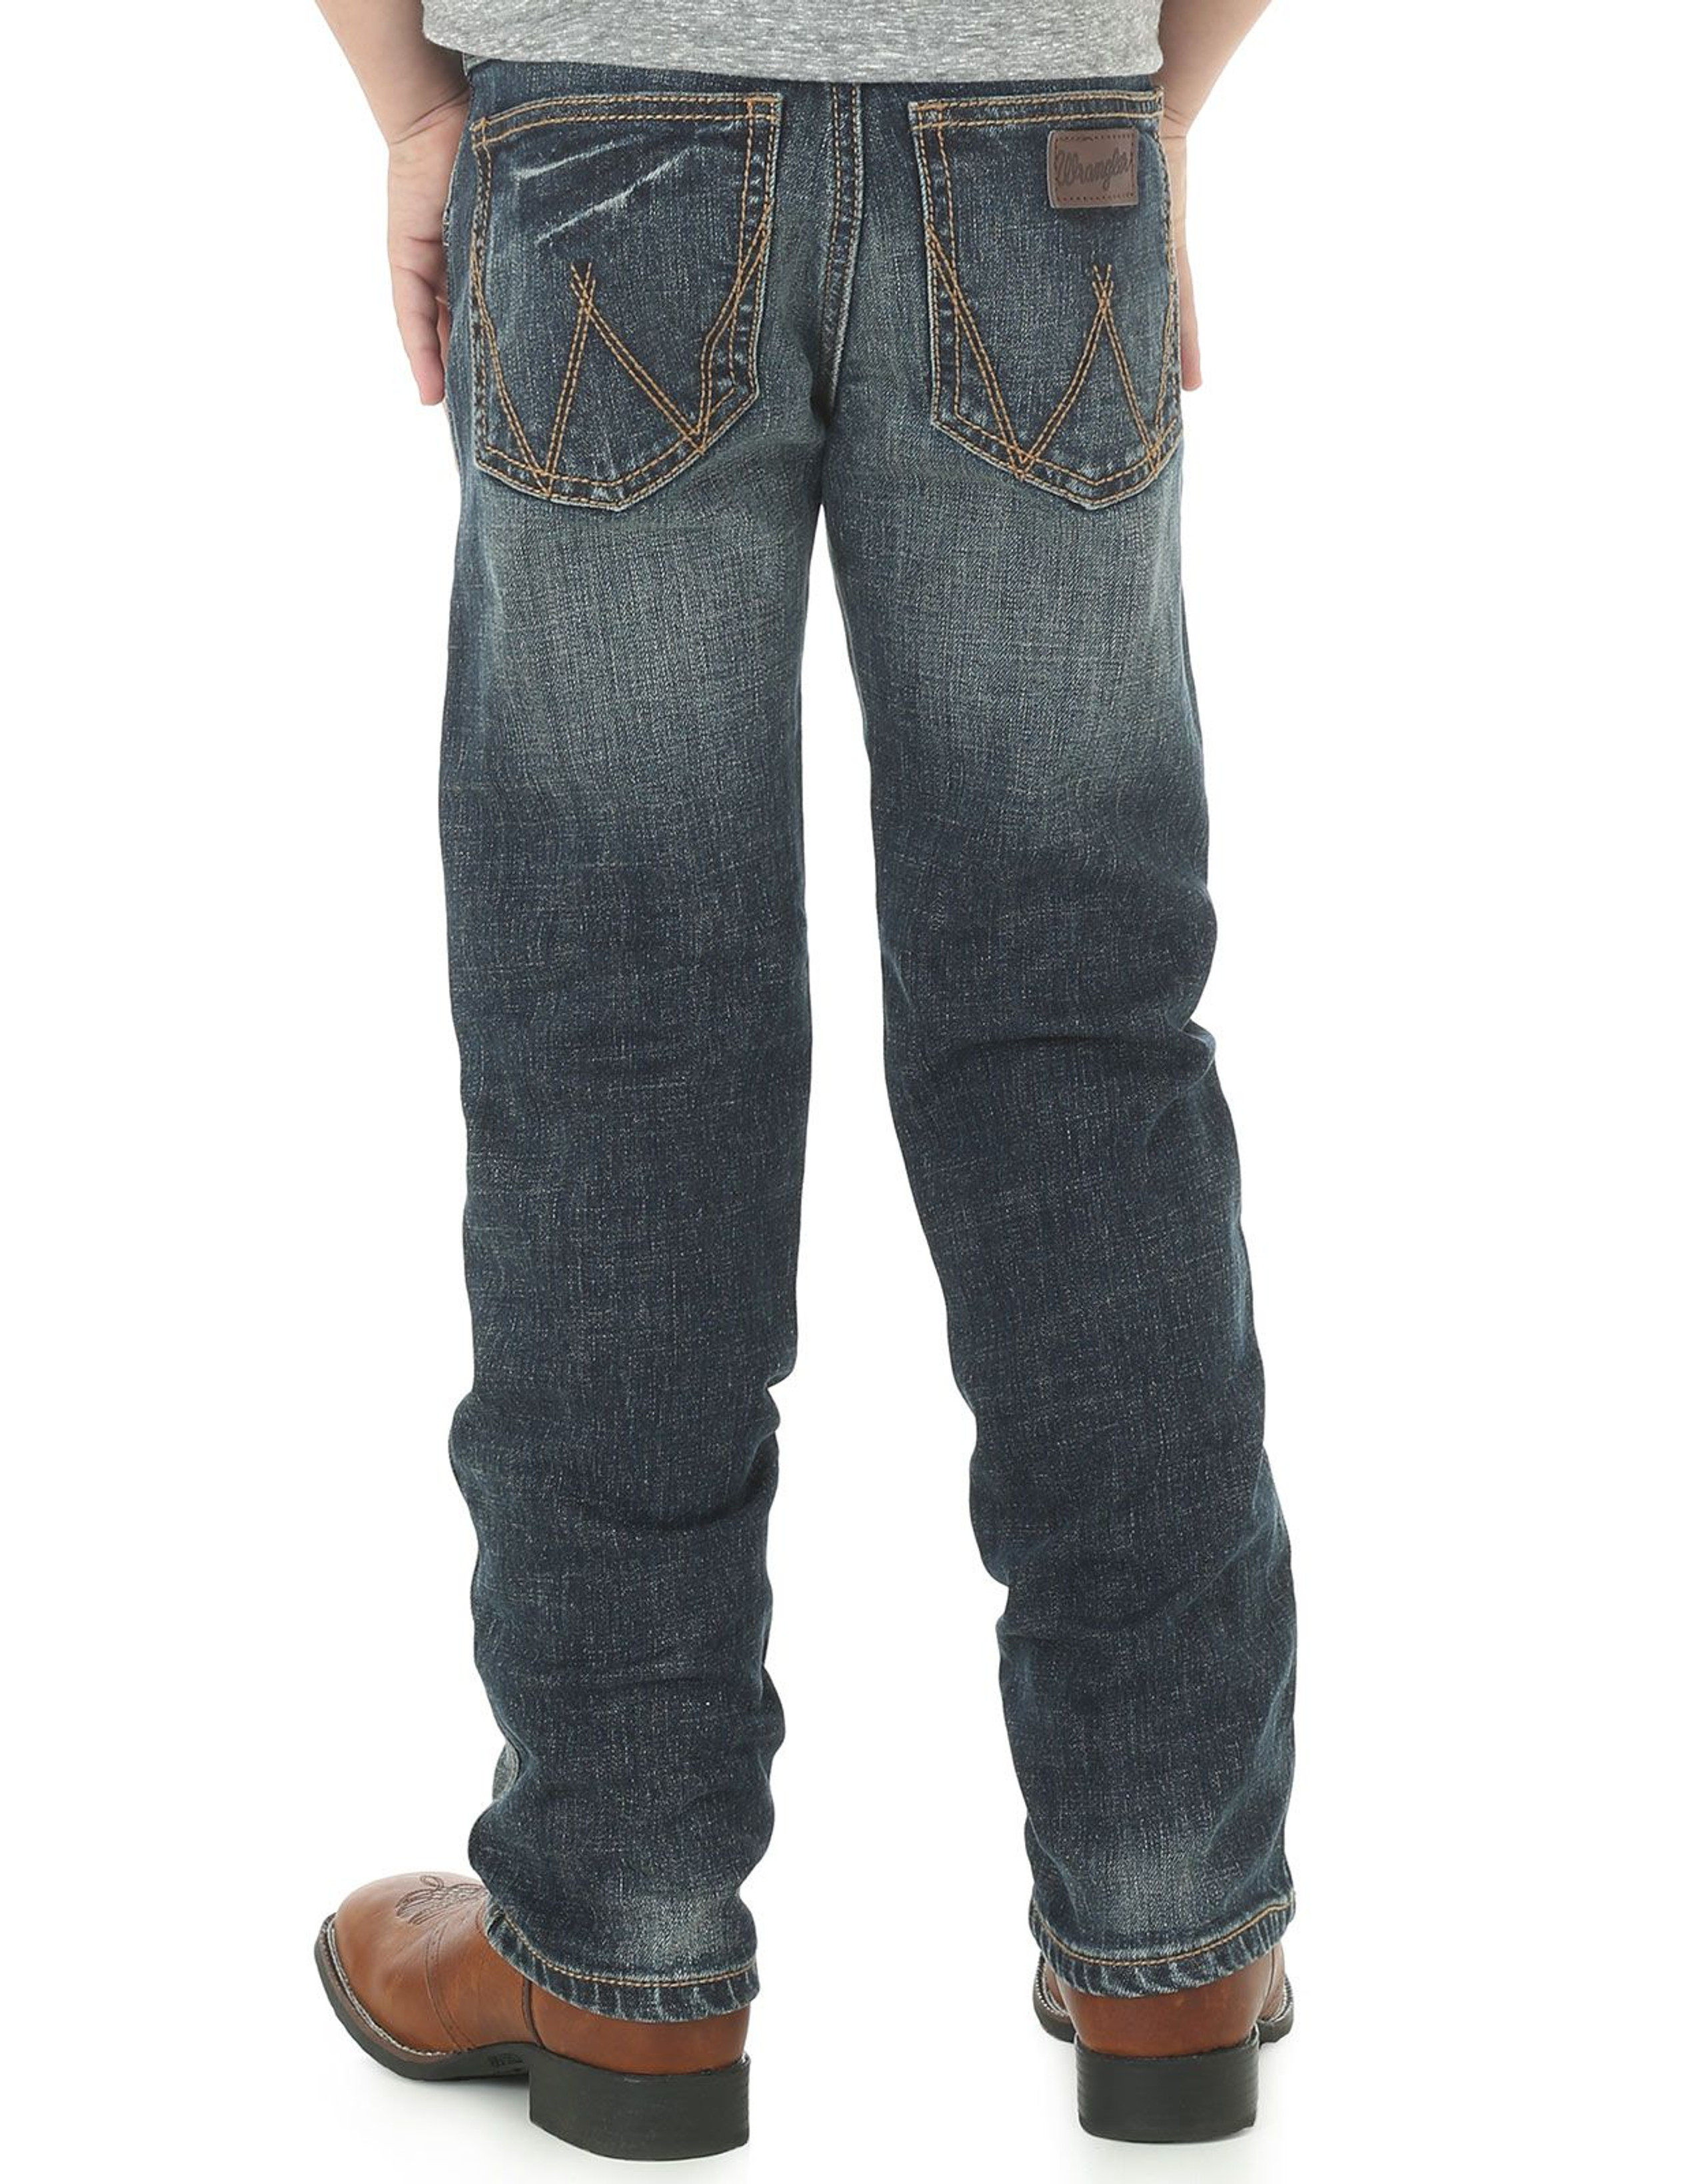 Boys' Western Jeans - Langston's